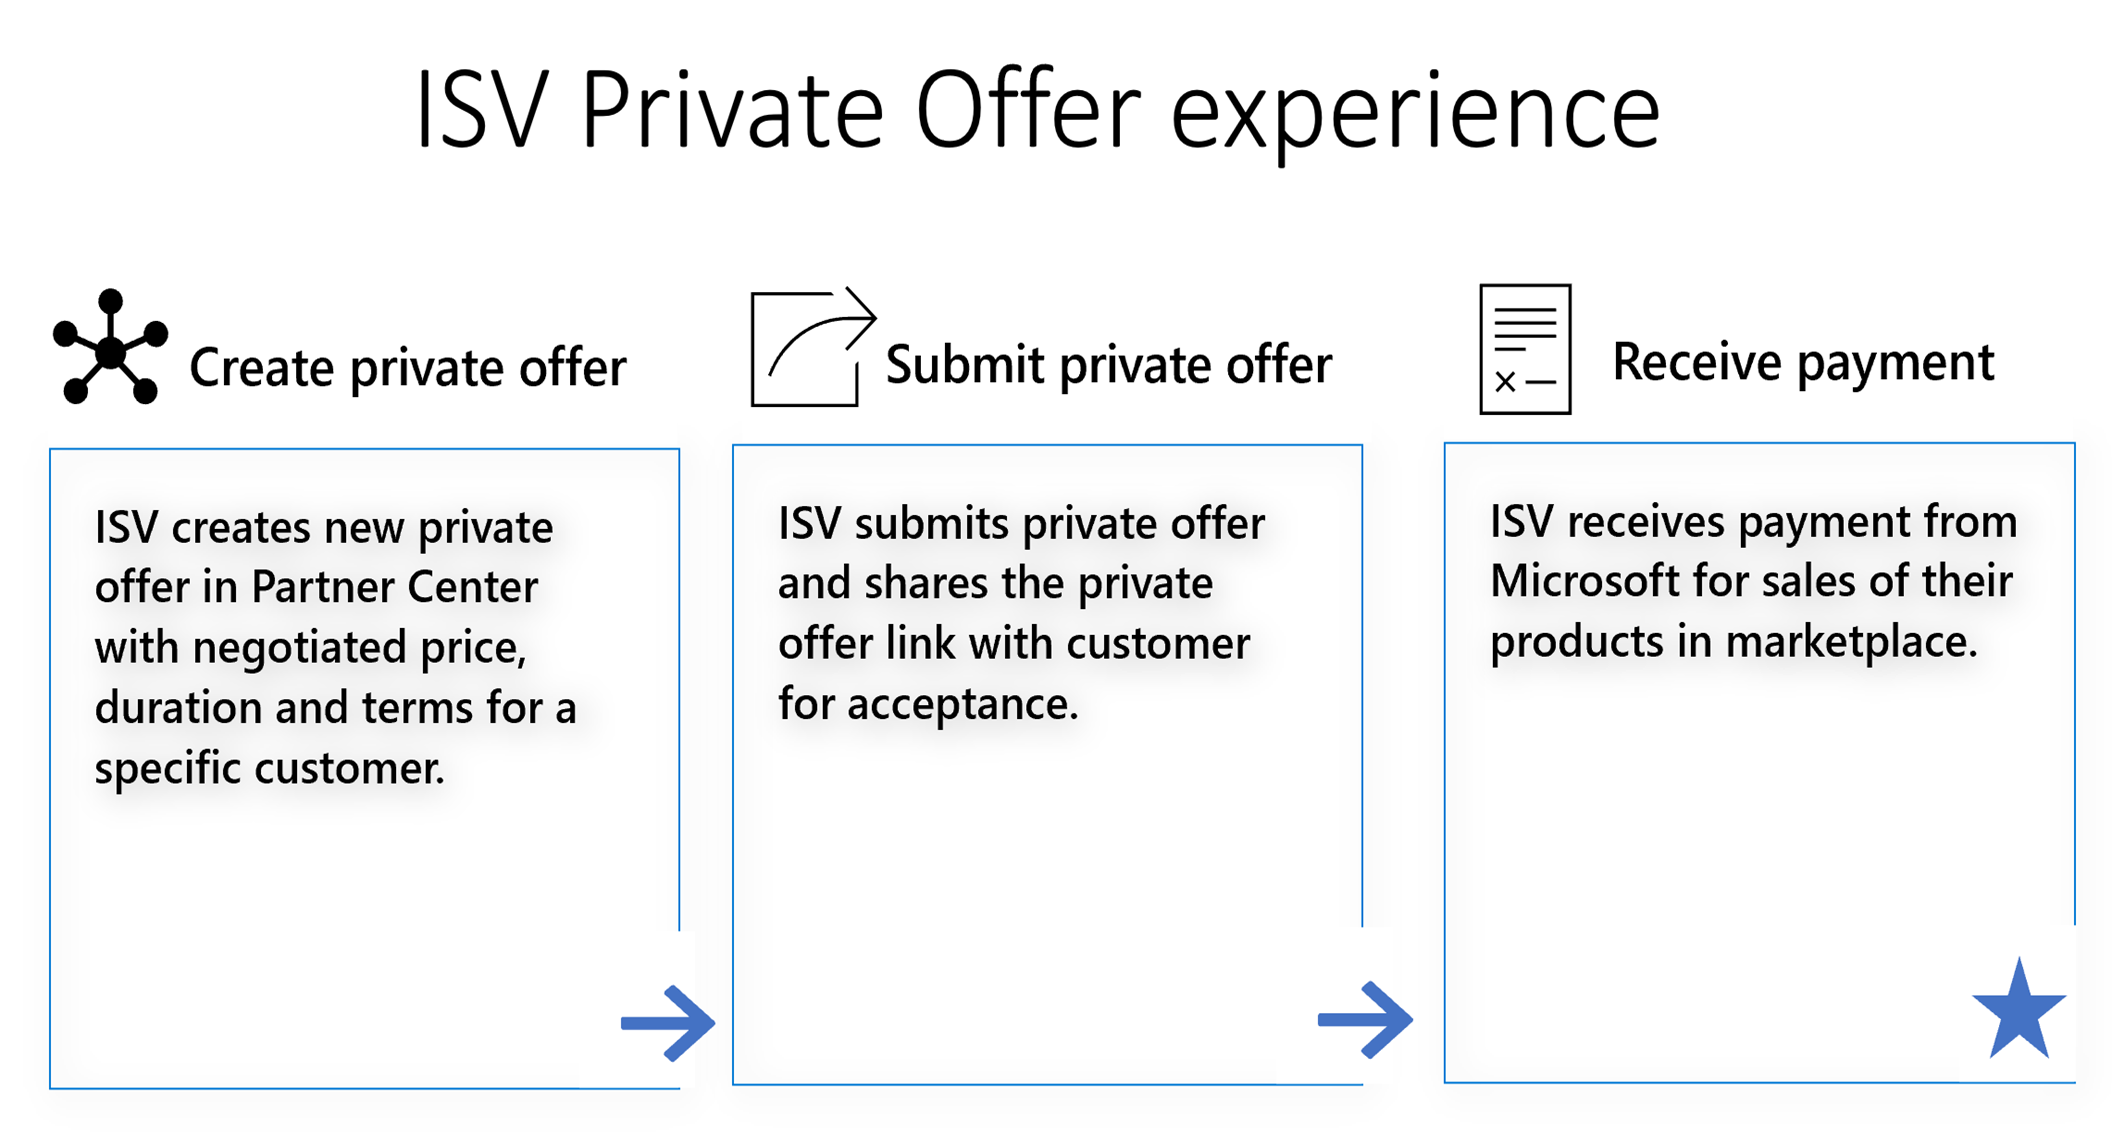 显示客户的 ISV 专用产品/服务体验的进度。